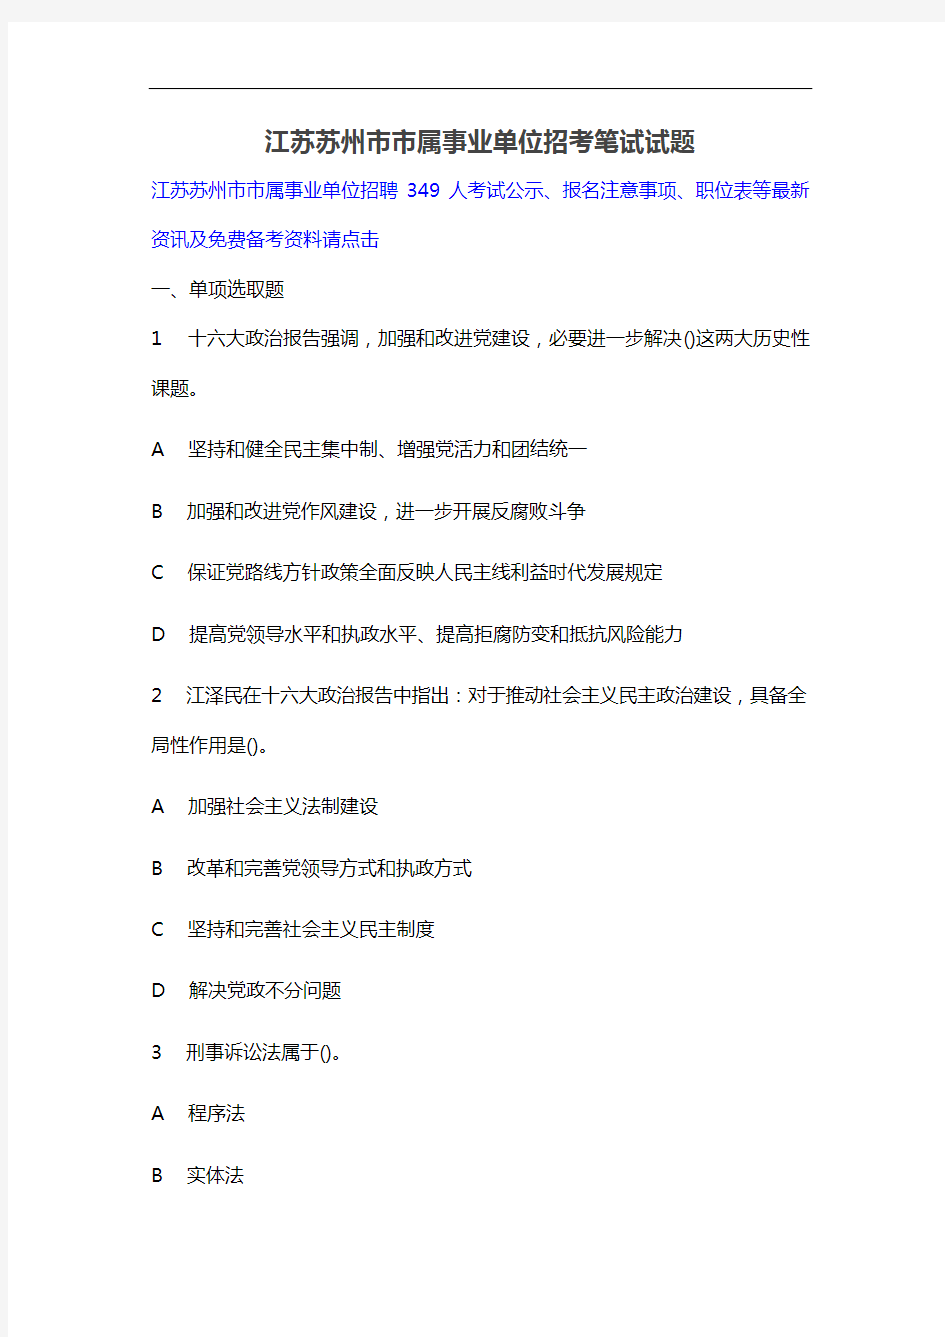 2021年江苏苏州市市属事业单位招考笔试试题